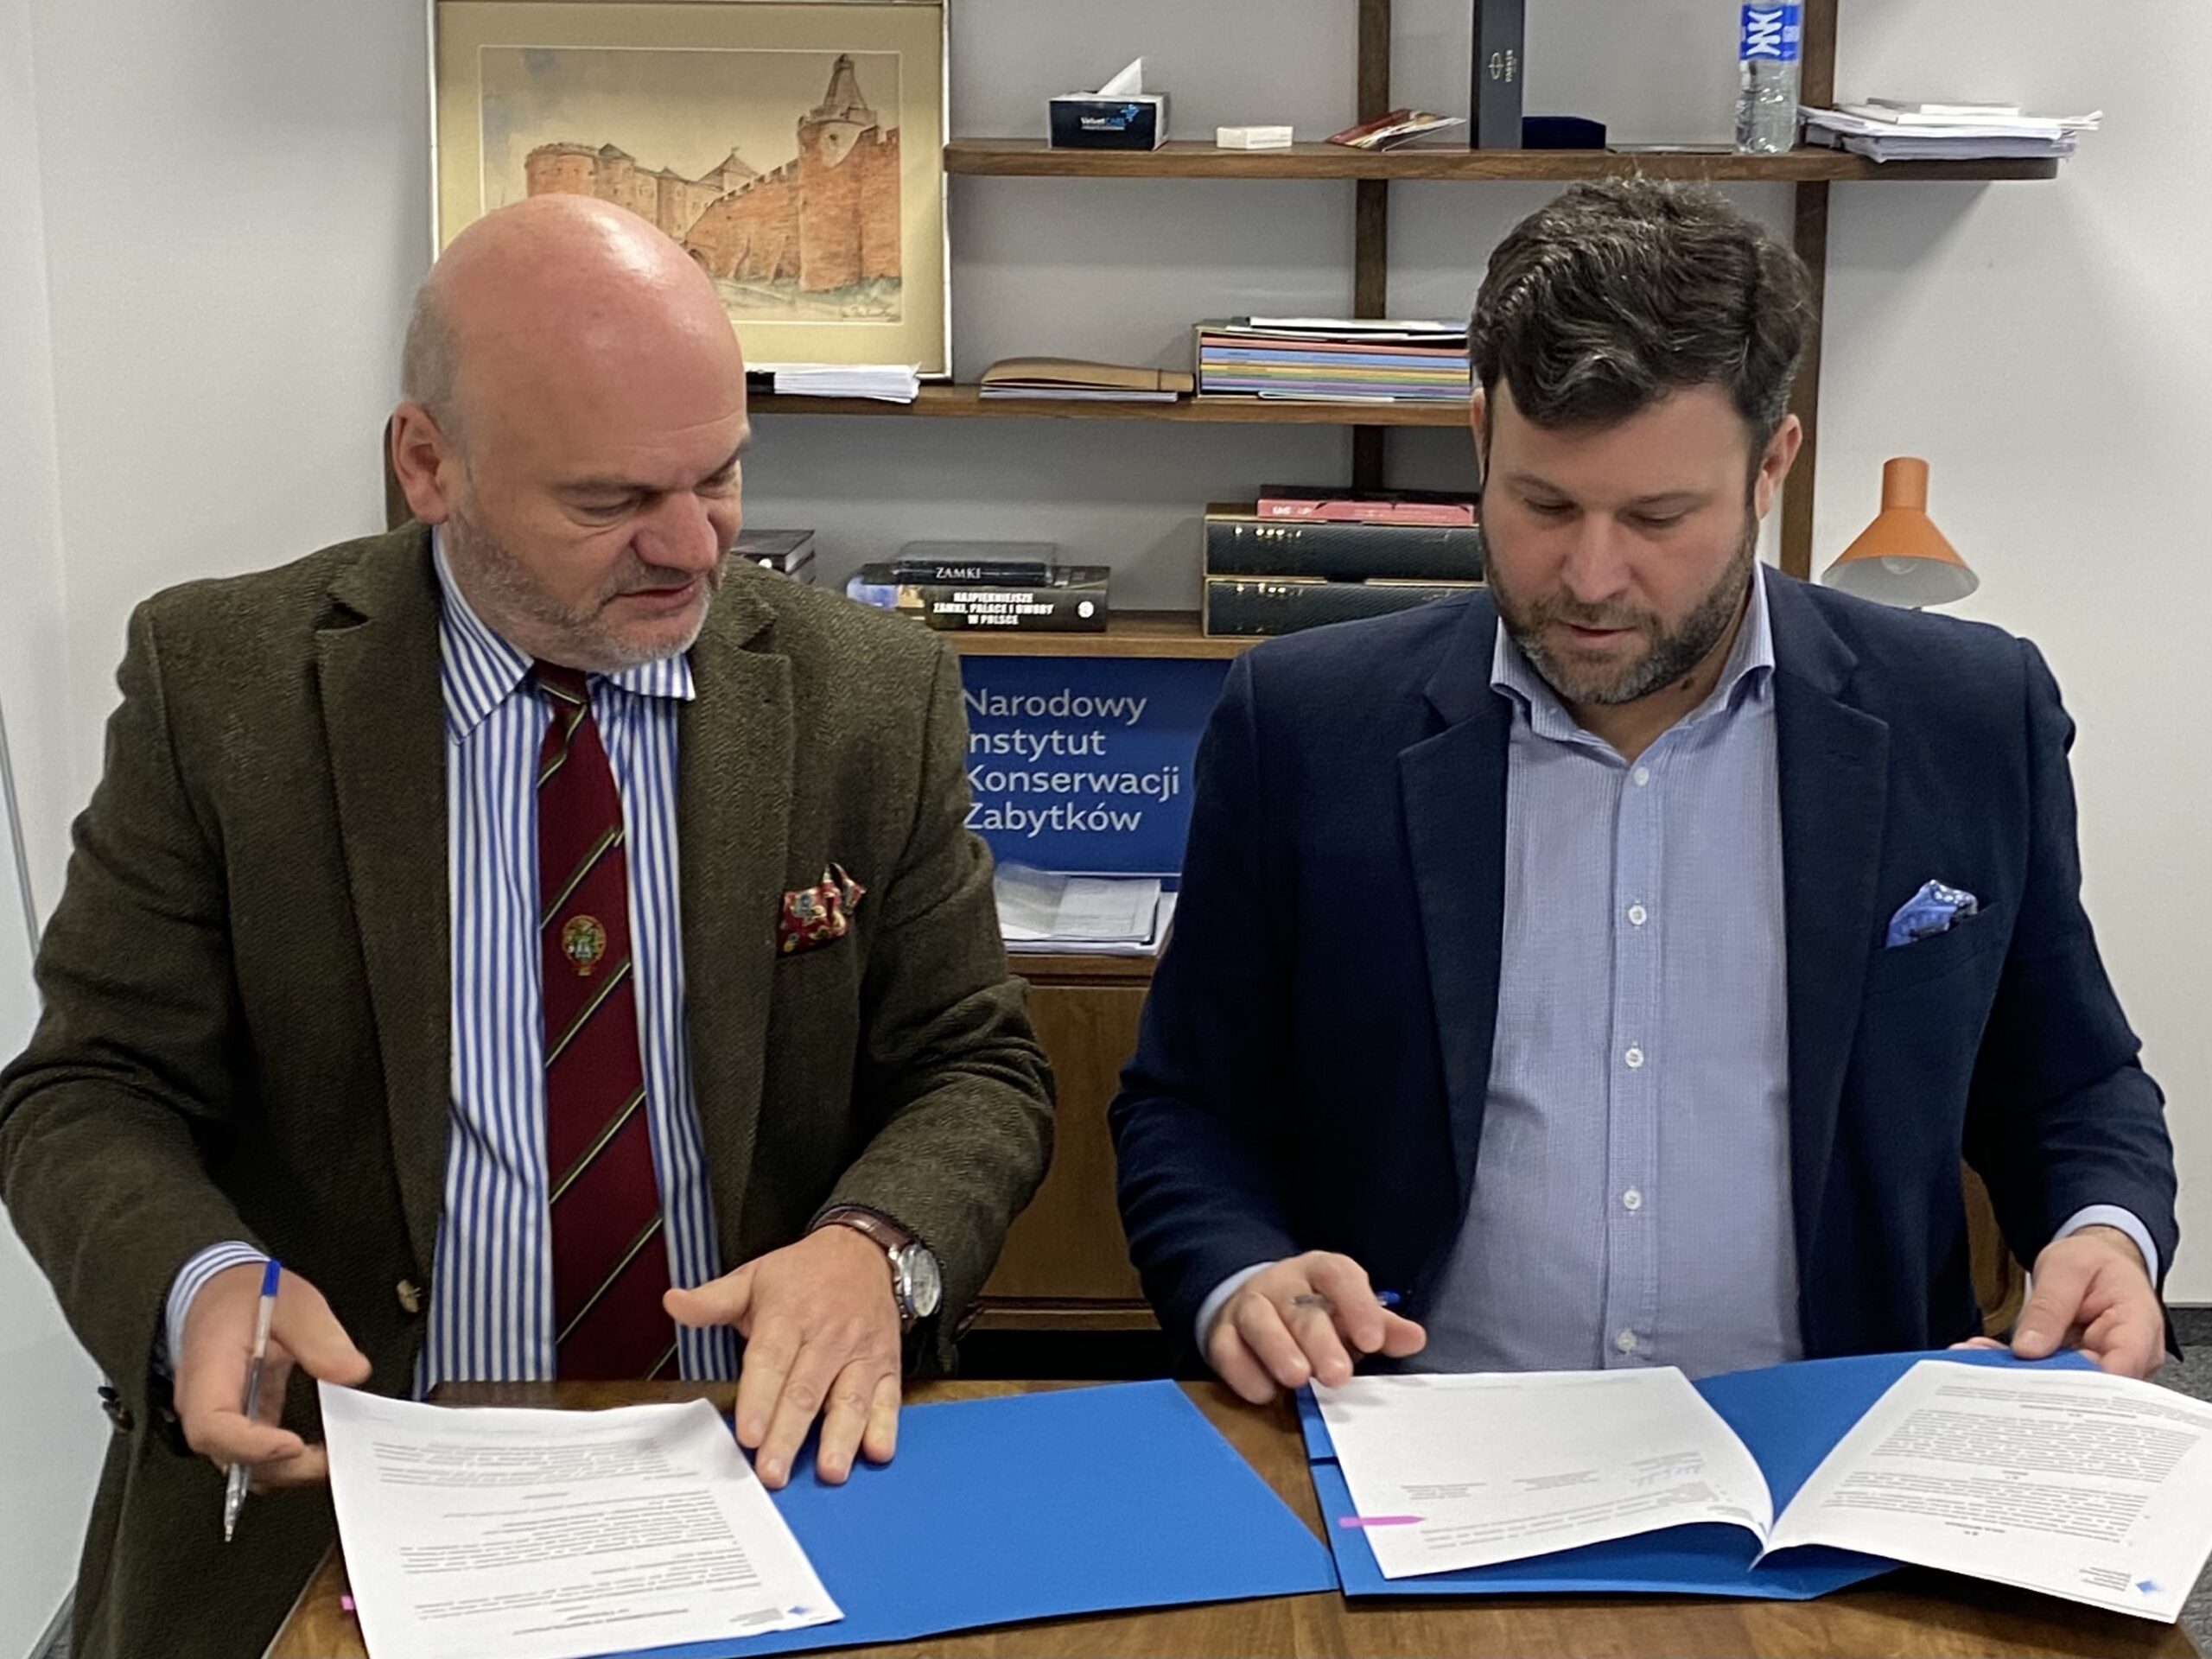 Prezes Zarządu Głównego PTZ Marcin Konrad Schirmer oraz Dyrektor NIKZ dr Michał Laszczkowski w trakcie podpisywania porozumienia o współpracy